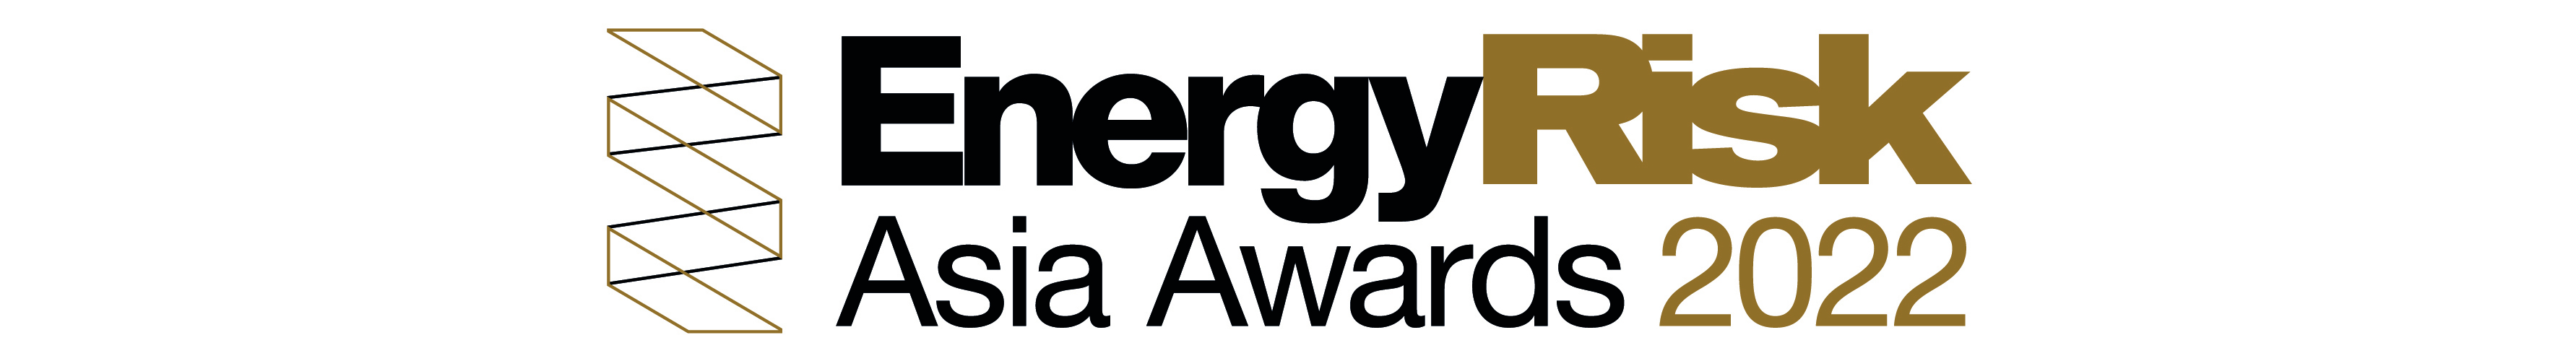 Energy-Risk-Asia-2022-logo